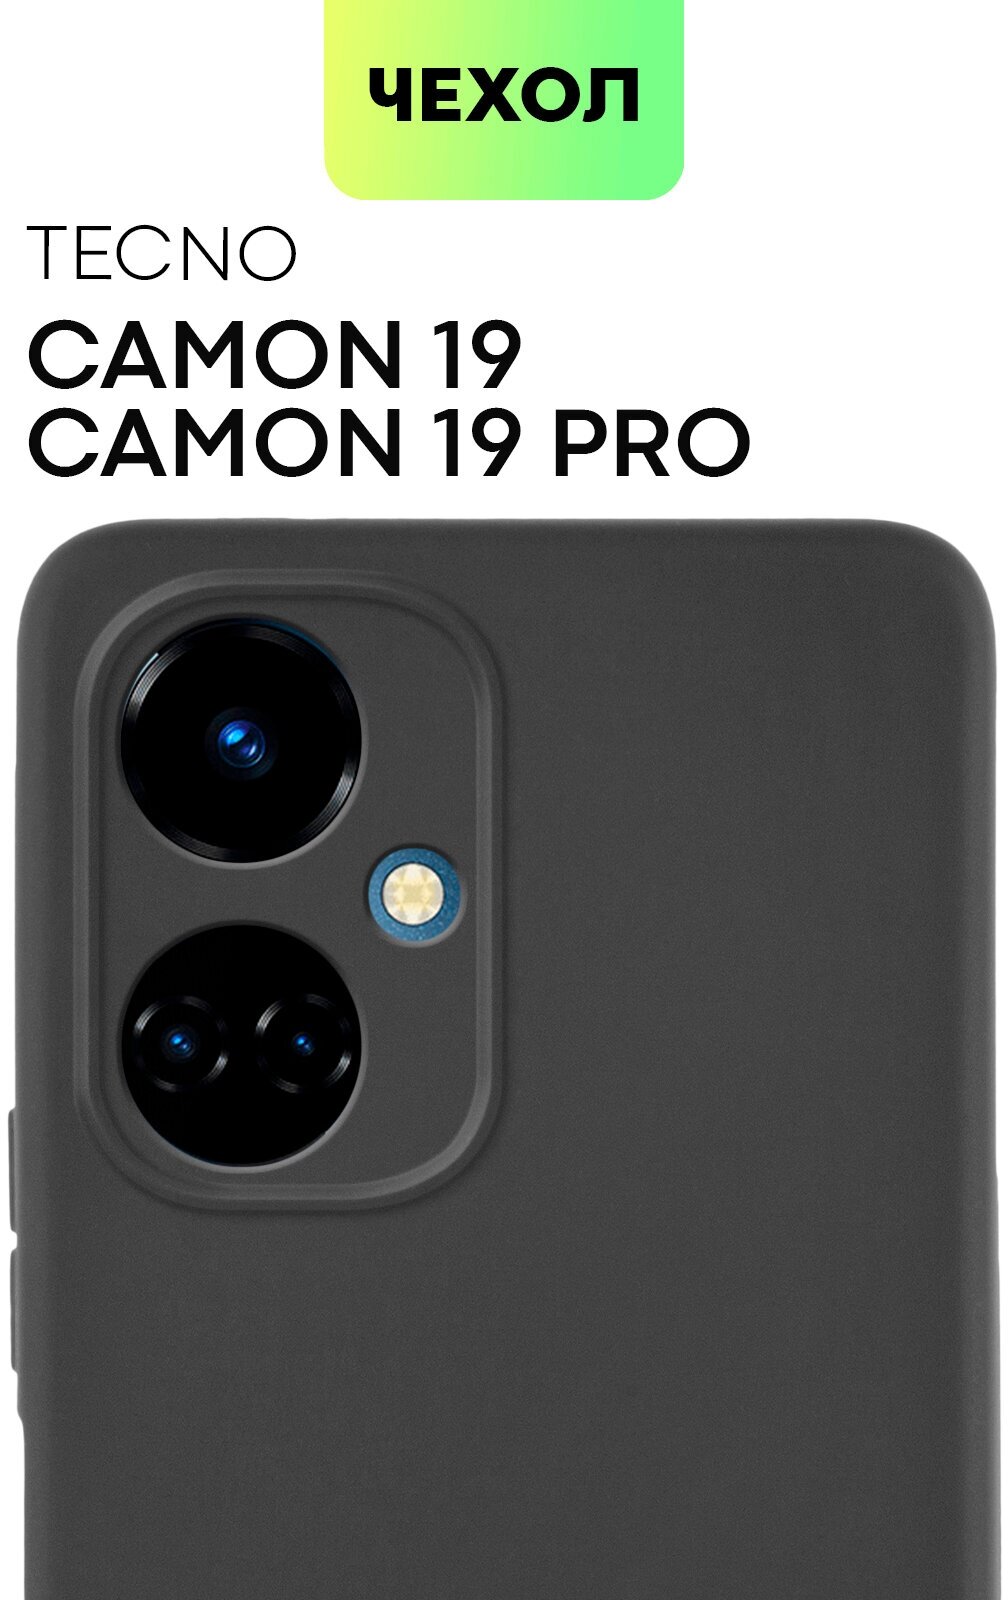 Чехол BROSCORP TECNO Camon 19, Camon 19 Pro (Техно Камон 19) тонкий с матовым soft-touch покрытием, защита вокруг модуля камеры, черный